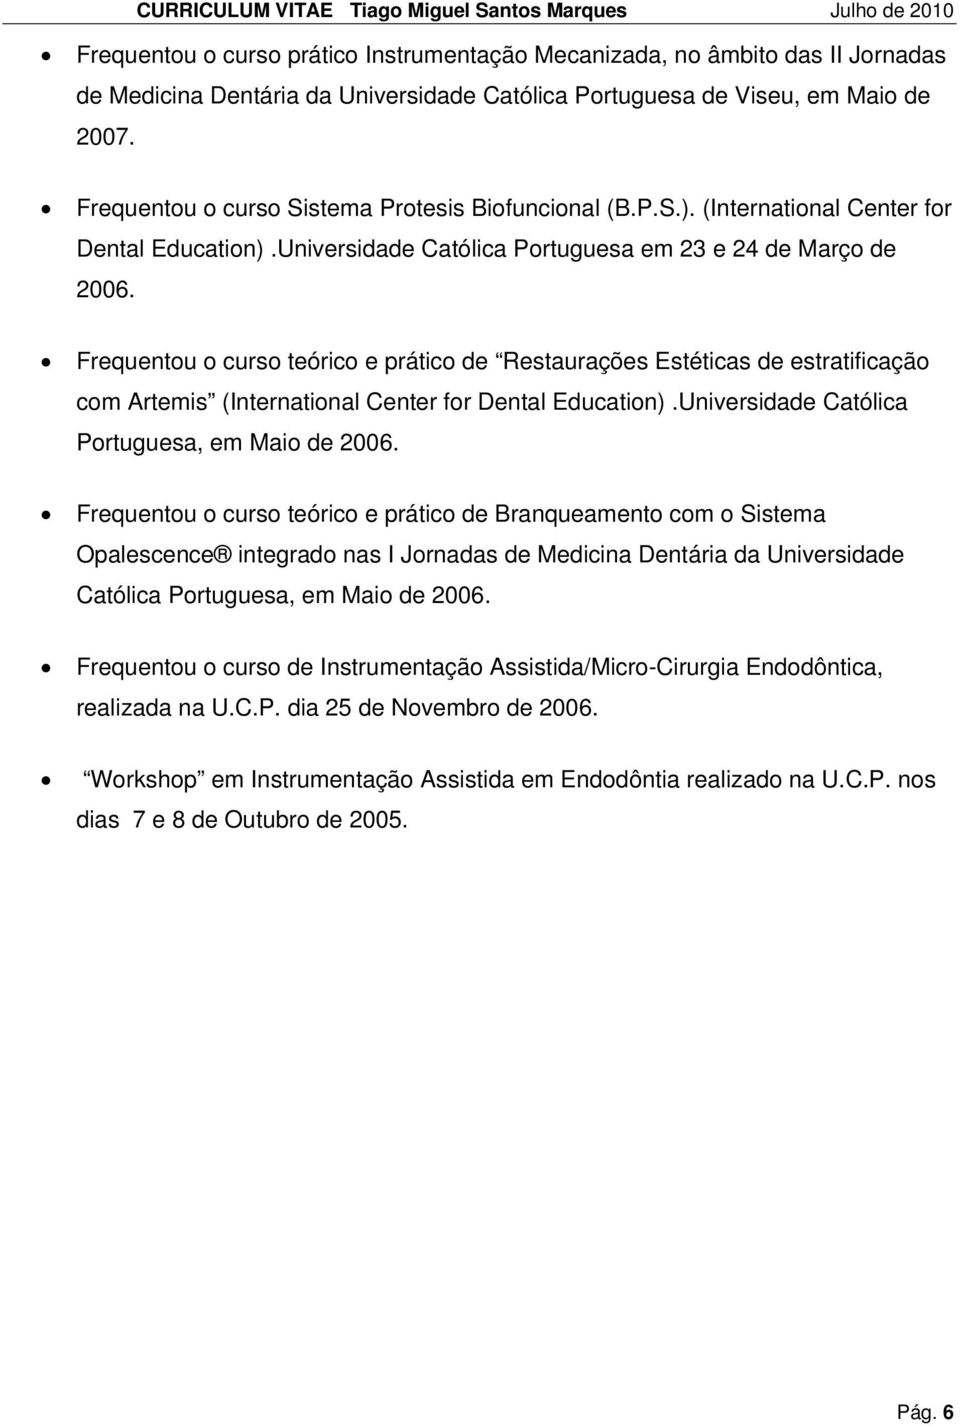 Frequentou o curso teórico e prático de Restaurações Estéticas de estratificação com Artemis (International Center for Dental Education).Universidade Católica Portuguesa, em Maio de 2006.